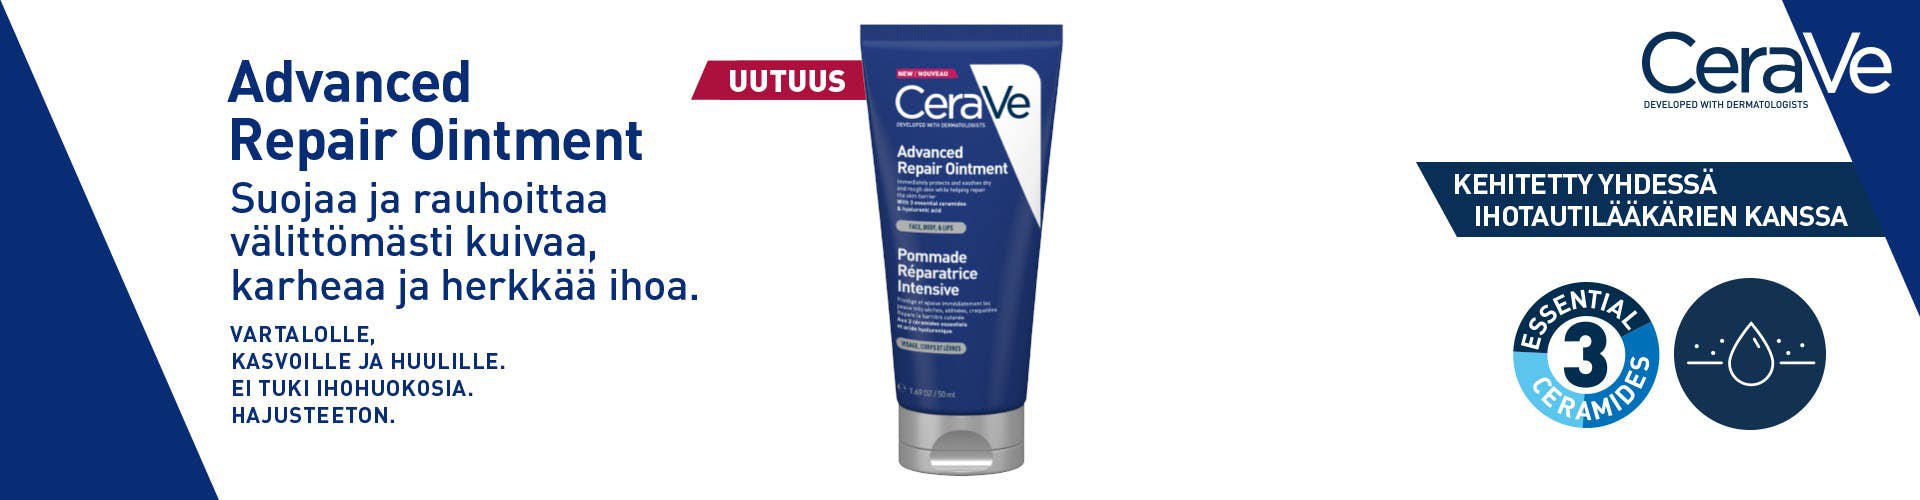 Uutuus CeraVe Advanced Repair Ointment